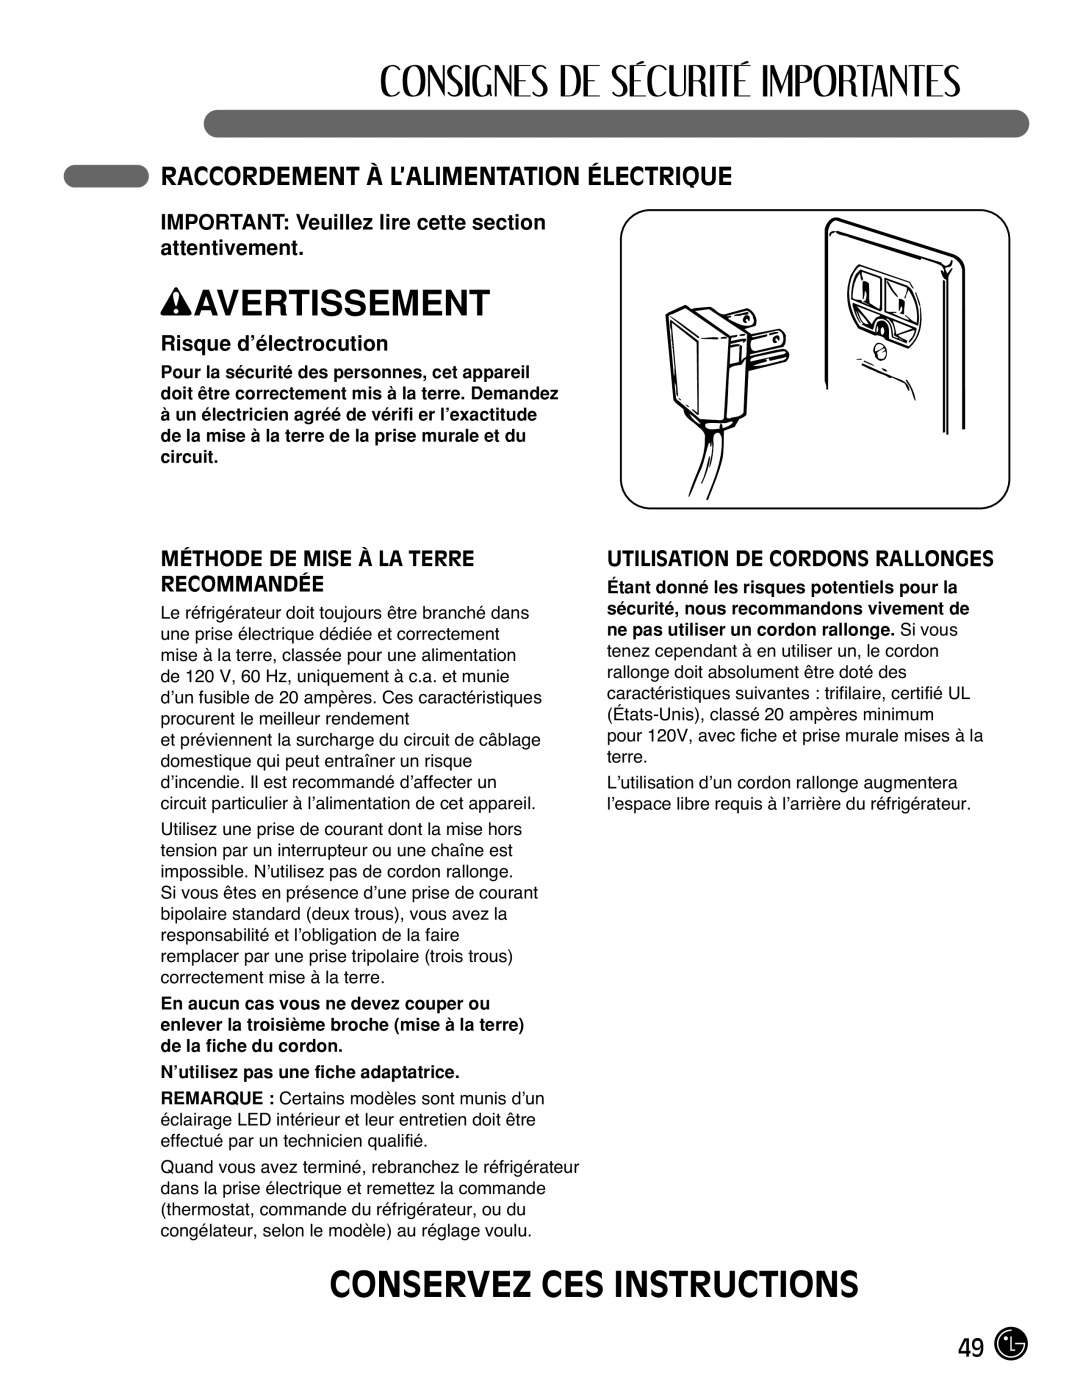 LG Electronics LMX2525971 Conservez Ces Instructions, Raccordement À L’Alimentation Électrique, Risque d’électrocution 